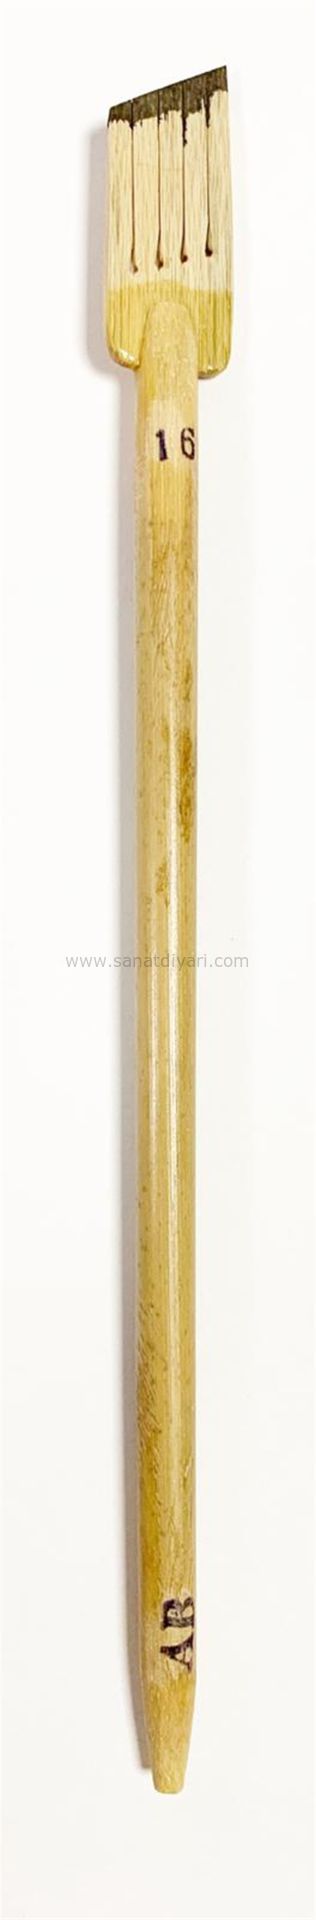 Tiryakiart Şaklı Bambu Kalem 16 mm